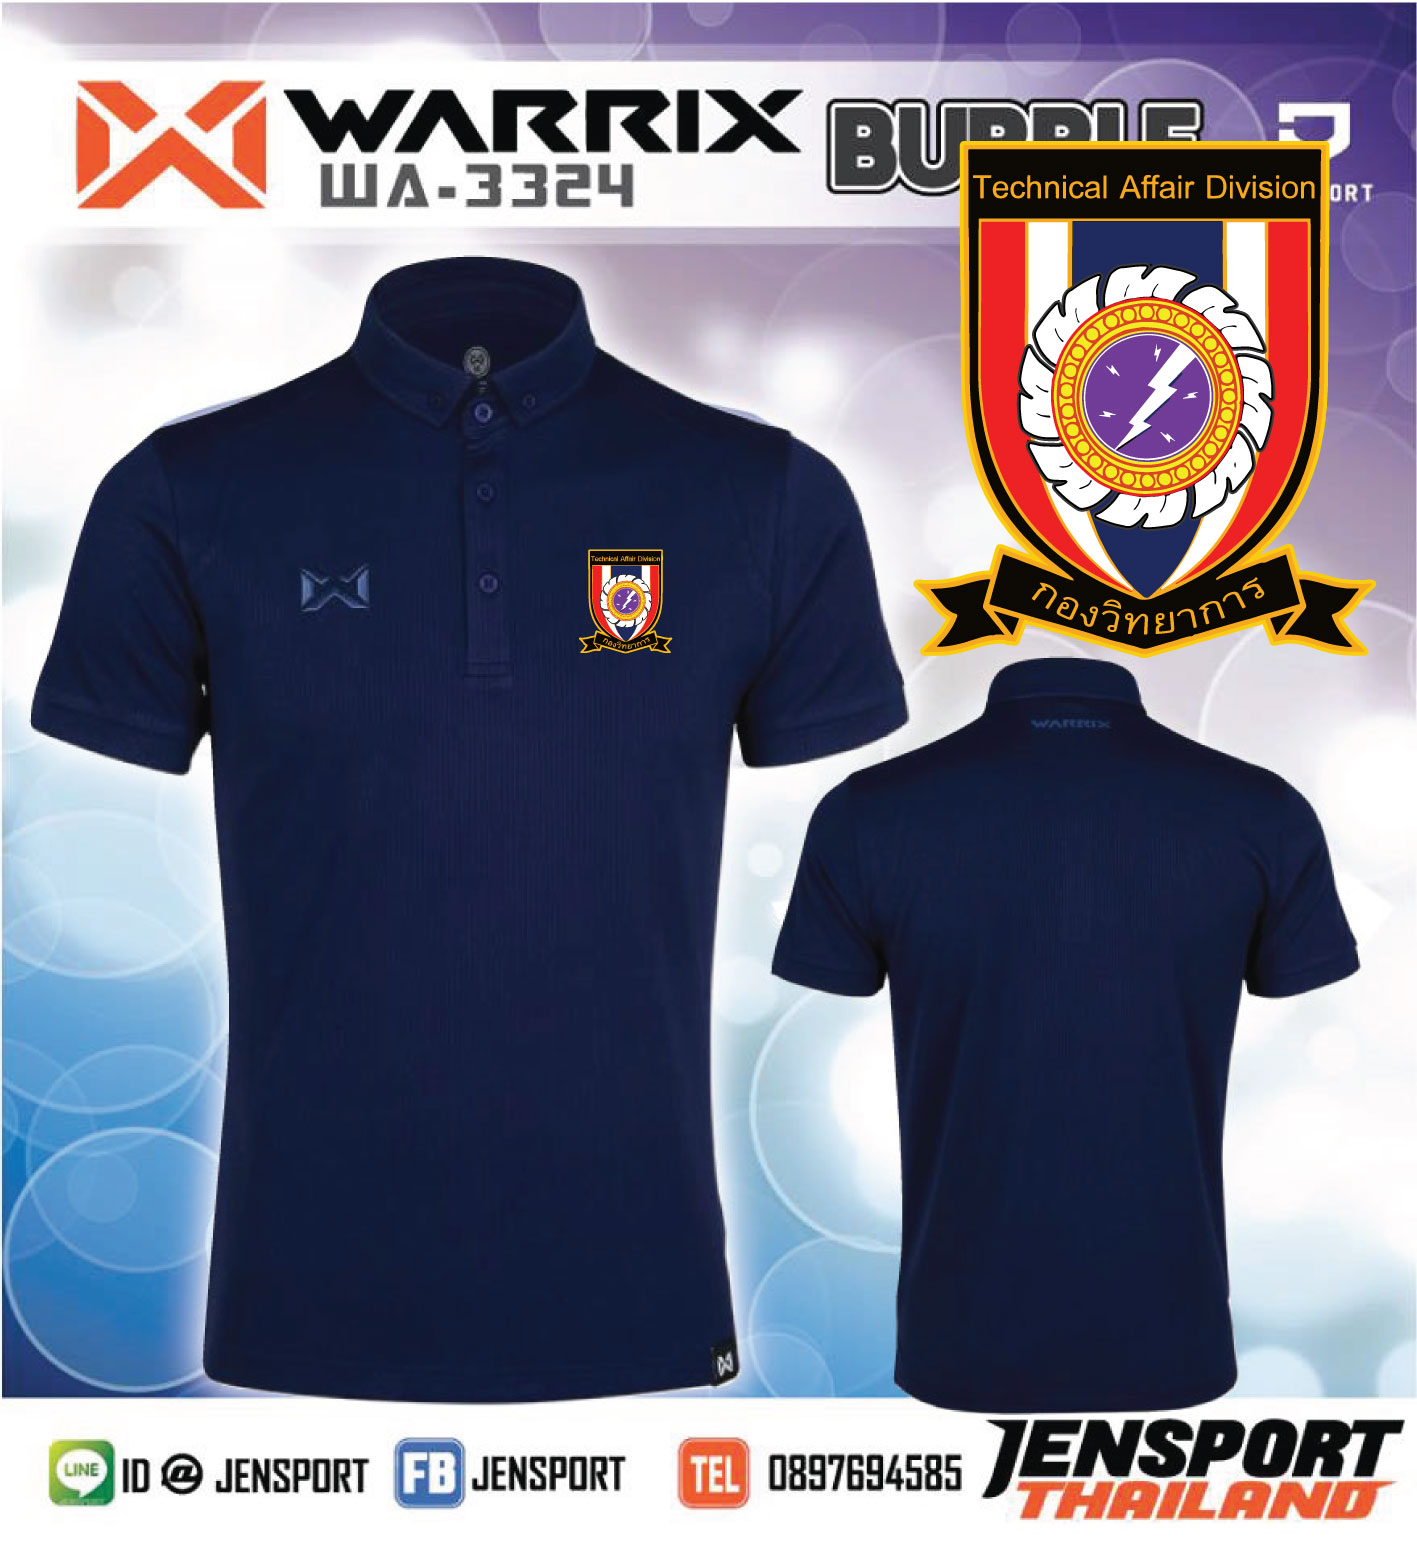 เสื้อฟุตบอล Warrix รุ่น WA-3324 สีกรมท่า ทีม ทหารกองวิทยาการ